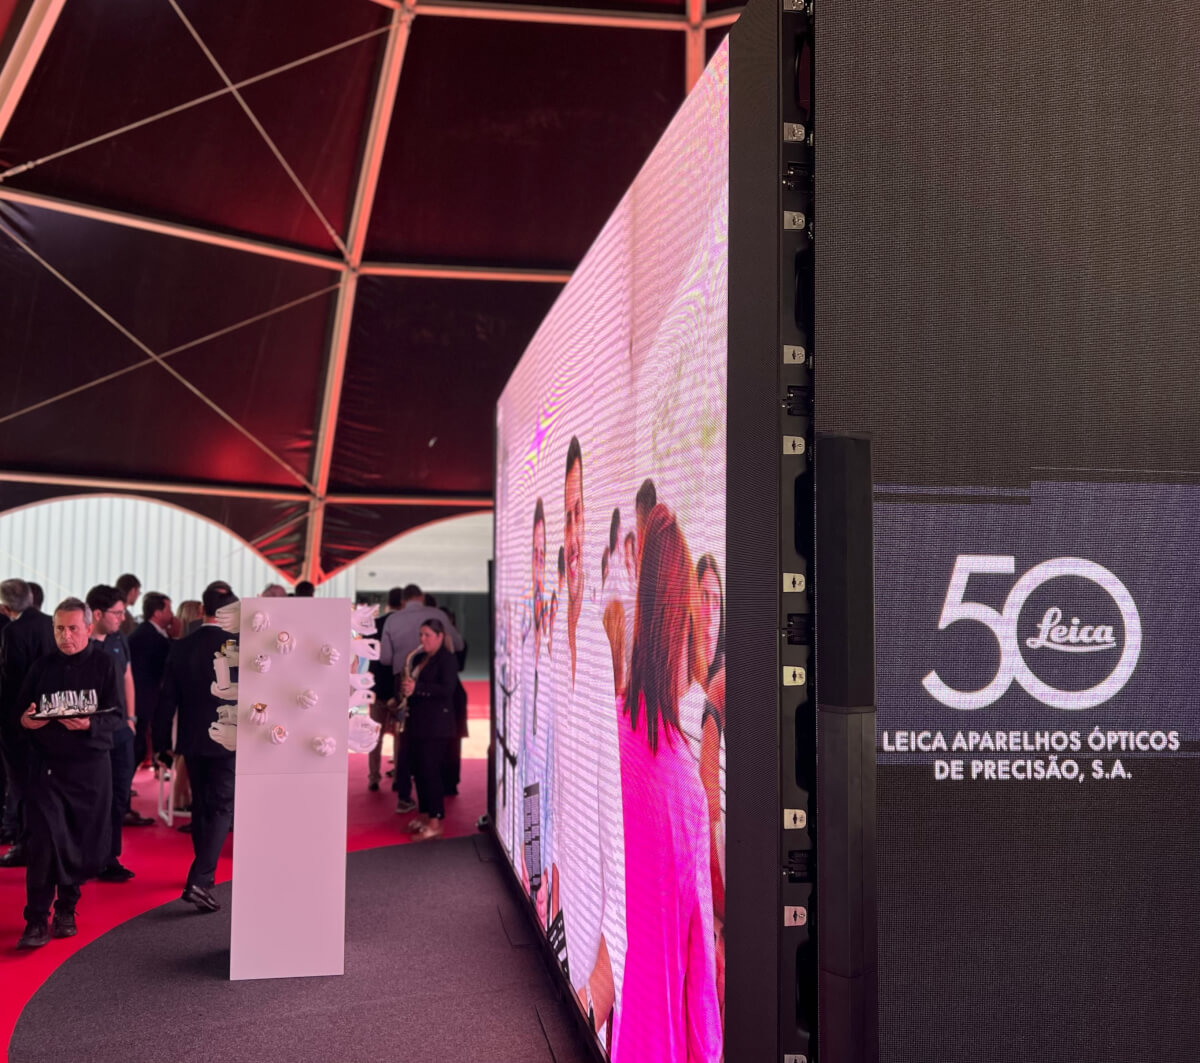 Le celebrazioni per i 50 anni dello stabilimento Leica in Portogallo sono state ricche di arte, musica e cultura
leica natura andreas Kaufmann
